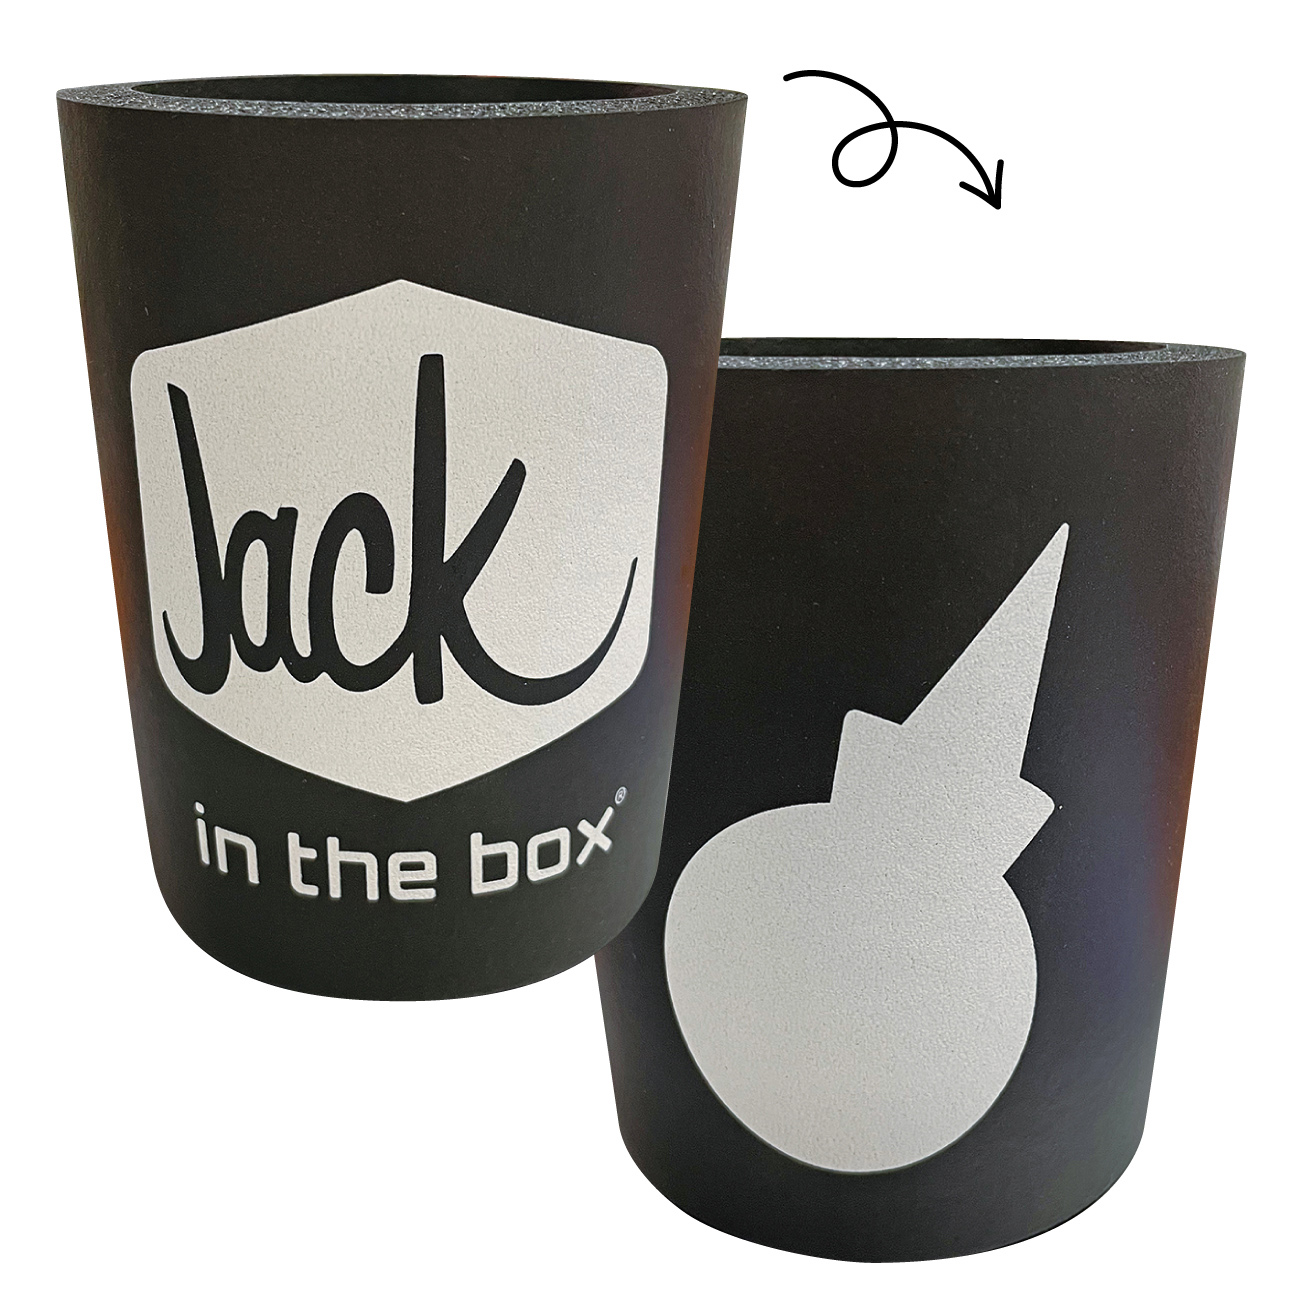 ジャックインザボックス クージー【ブラック】Jack in the box KOOZIE【BLACK】